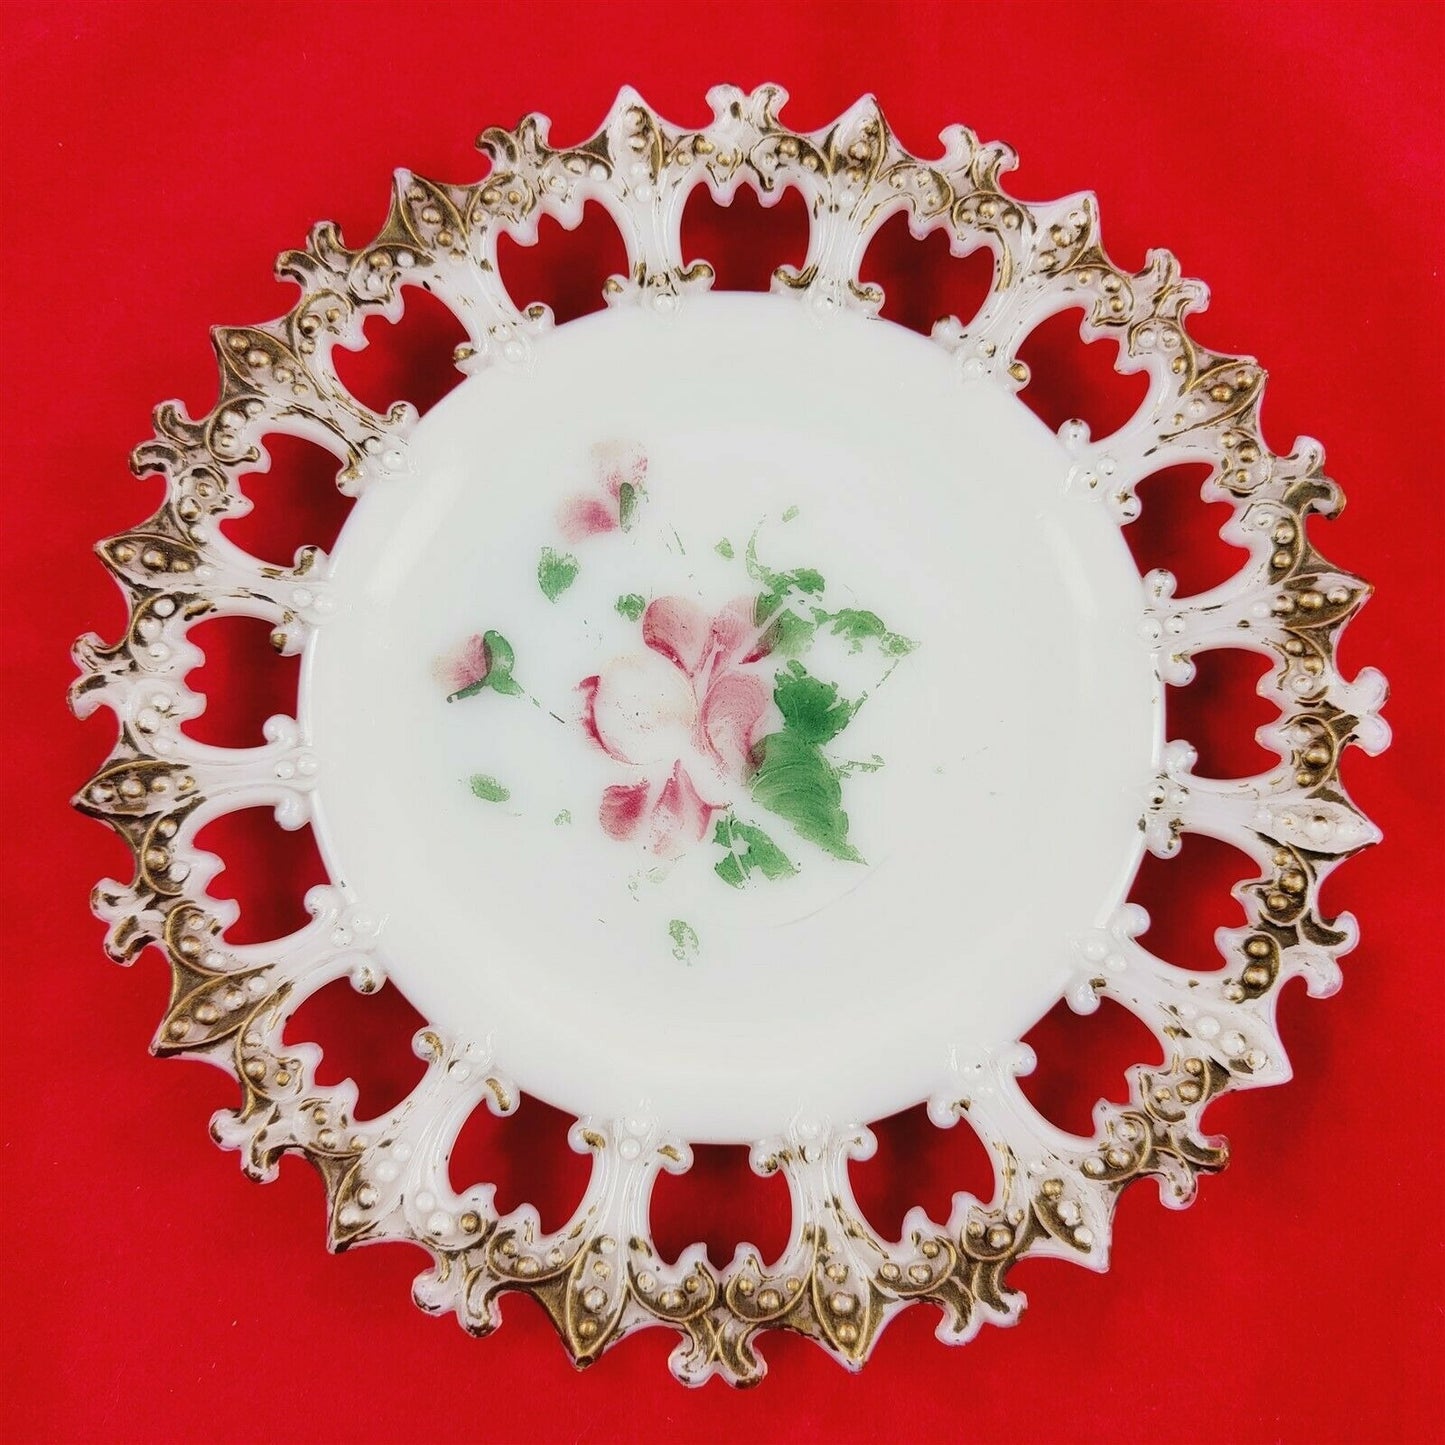 3 Vintage Milk Glass Plates Fleur De Lis Border Painted Floral Victorian